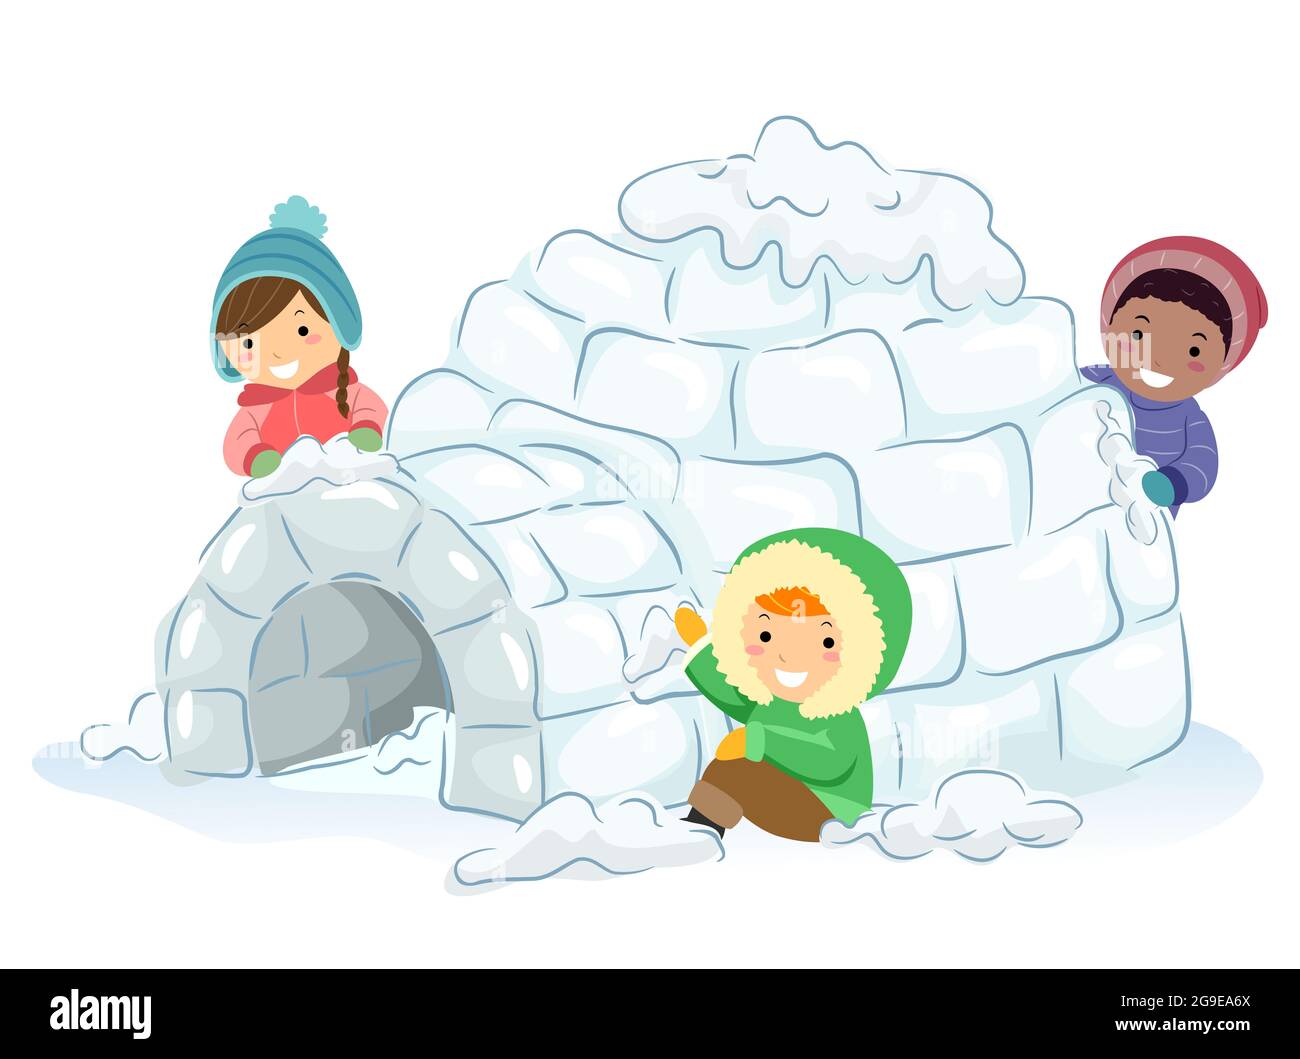 Ilustración de Stickman Kids Haciendo un Igloo, fuerte de nieve en la nieve Foto de stock